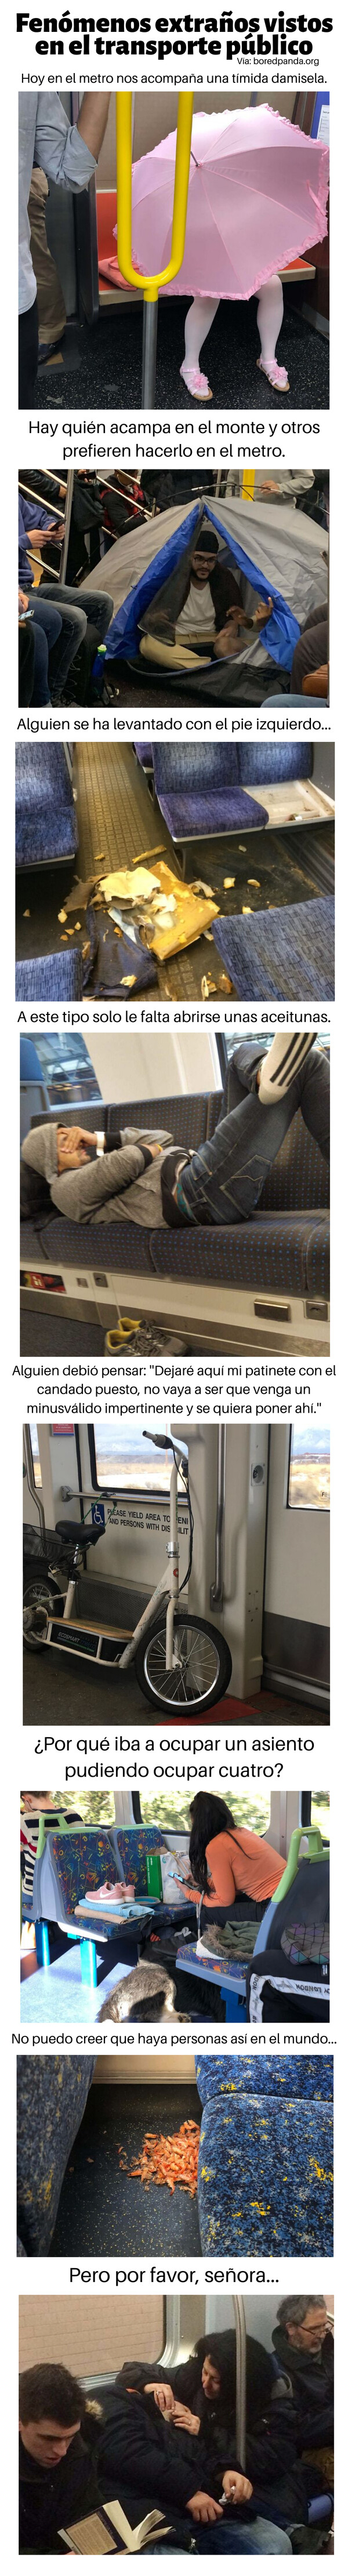 Meme_otros - Fenómenos extraños vistos en el transporte público